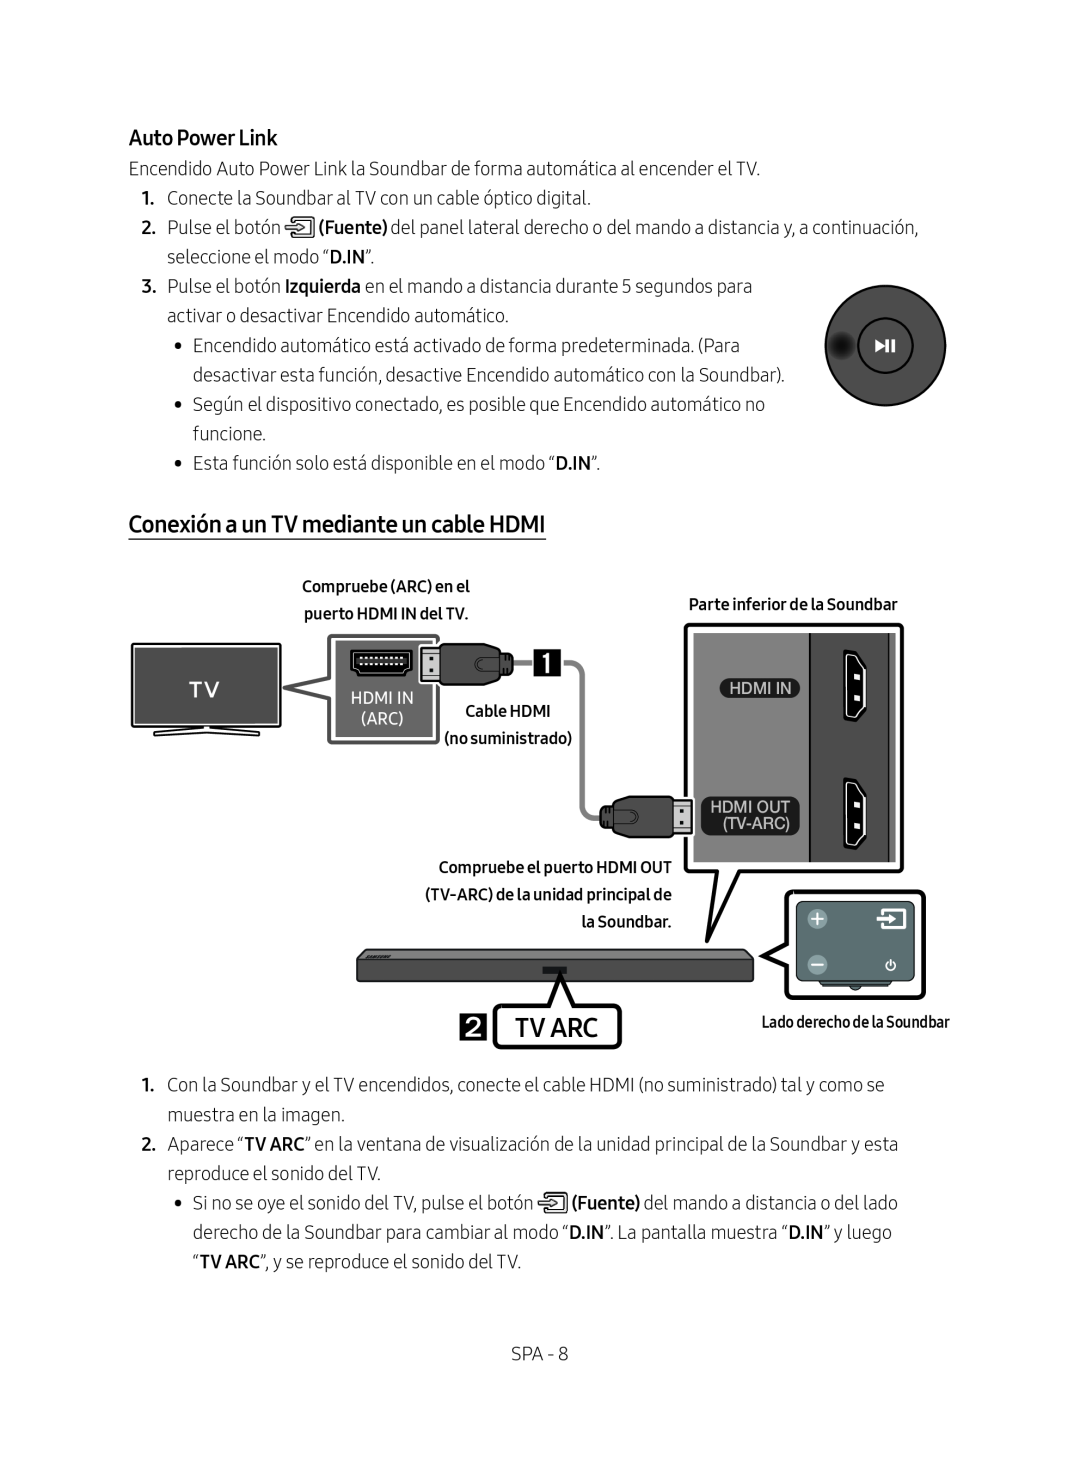 Samsung HW-M450/ZG manual Conexión a un TV mediante un cable HDMI,  Tv Arc, Auto Power Link, Parte inferior de la Soundbar 